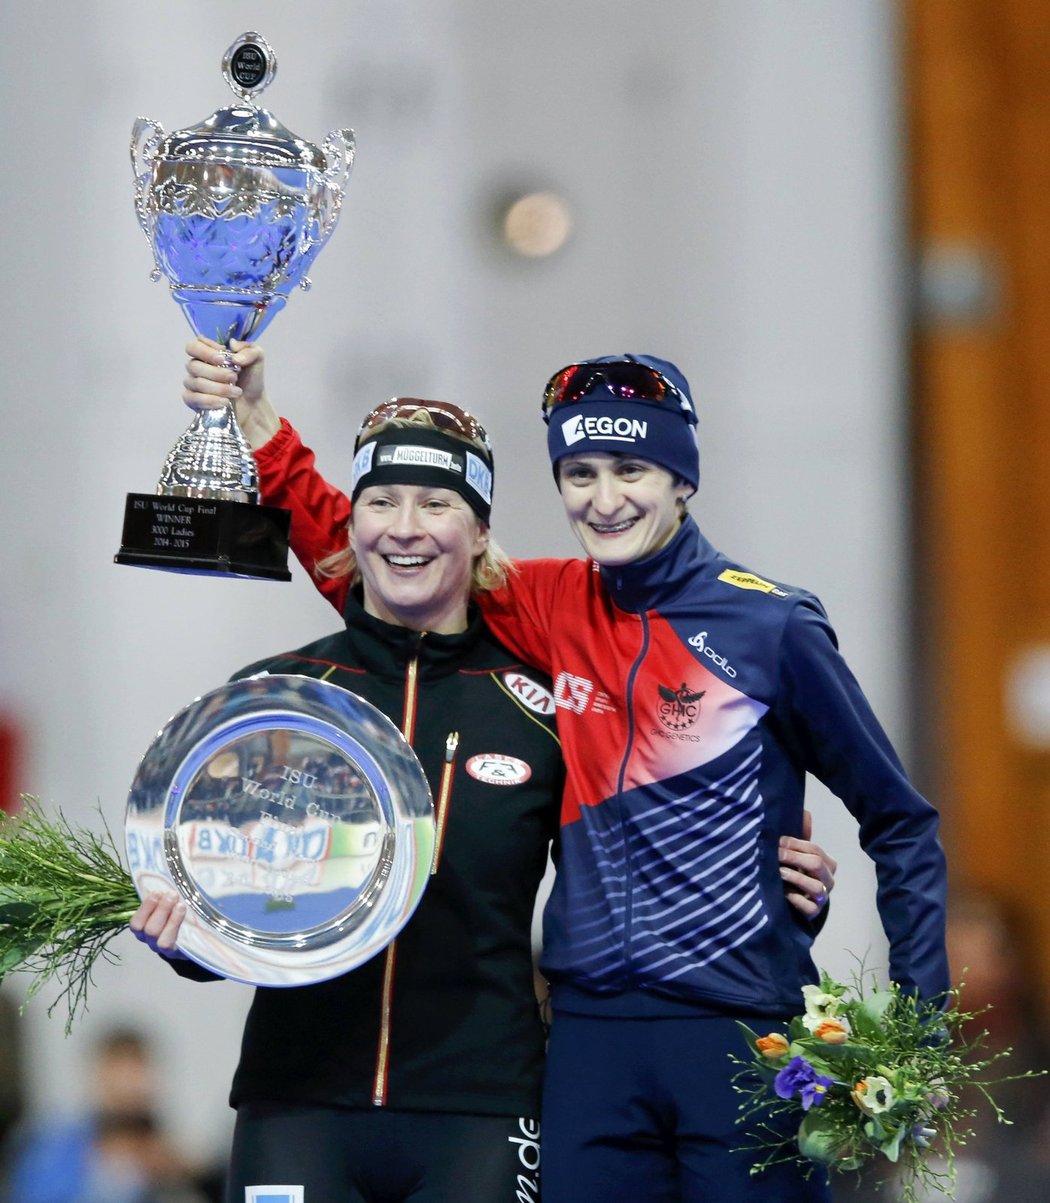 Rychlobruslařka Martina Sáblíková vyhrála ve finále Světového poháru